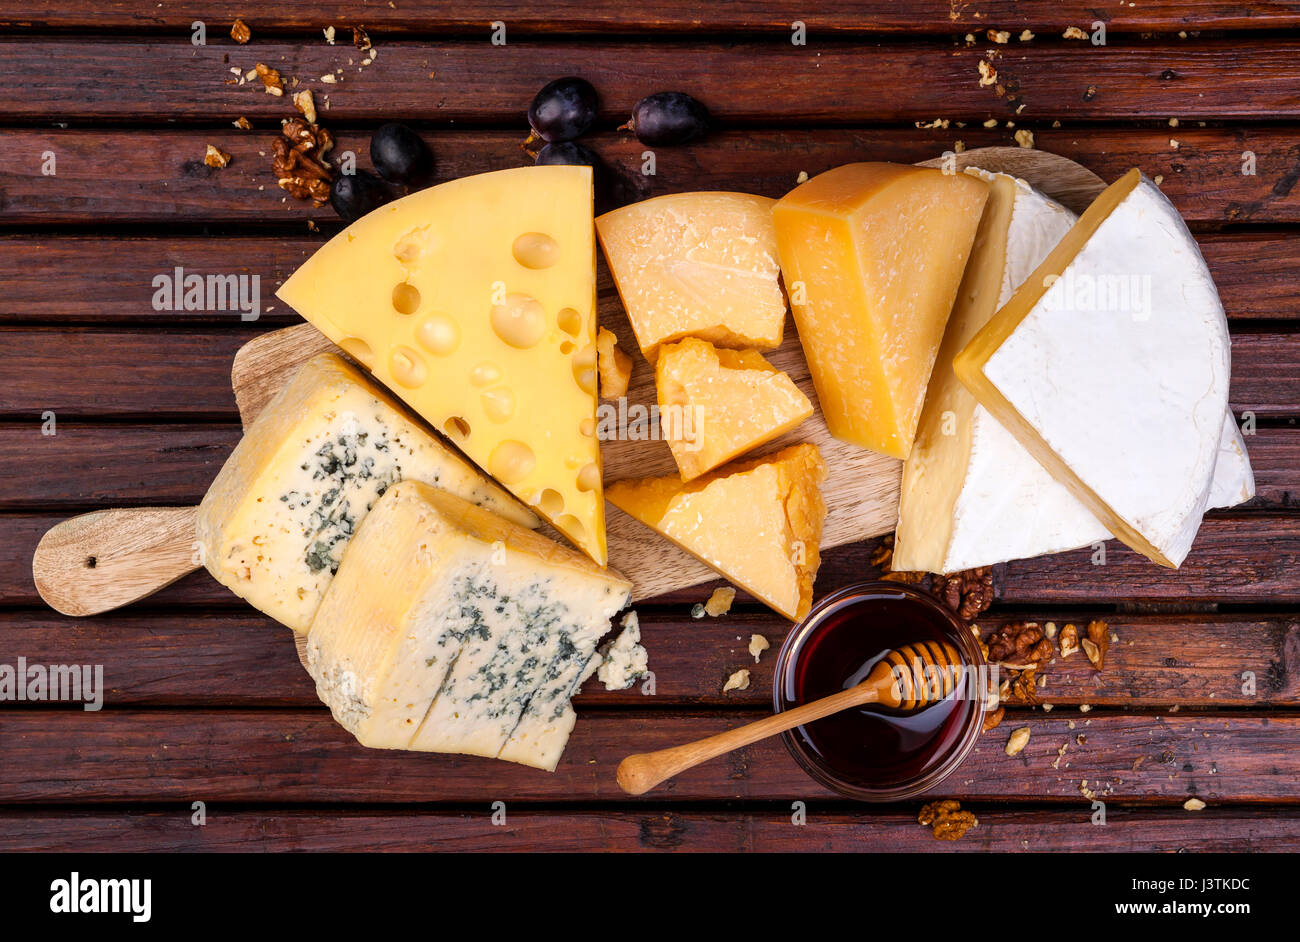 Scheda di formaggio. Vari tipi di formaggio. Vista superiore Foto Stock